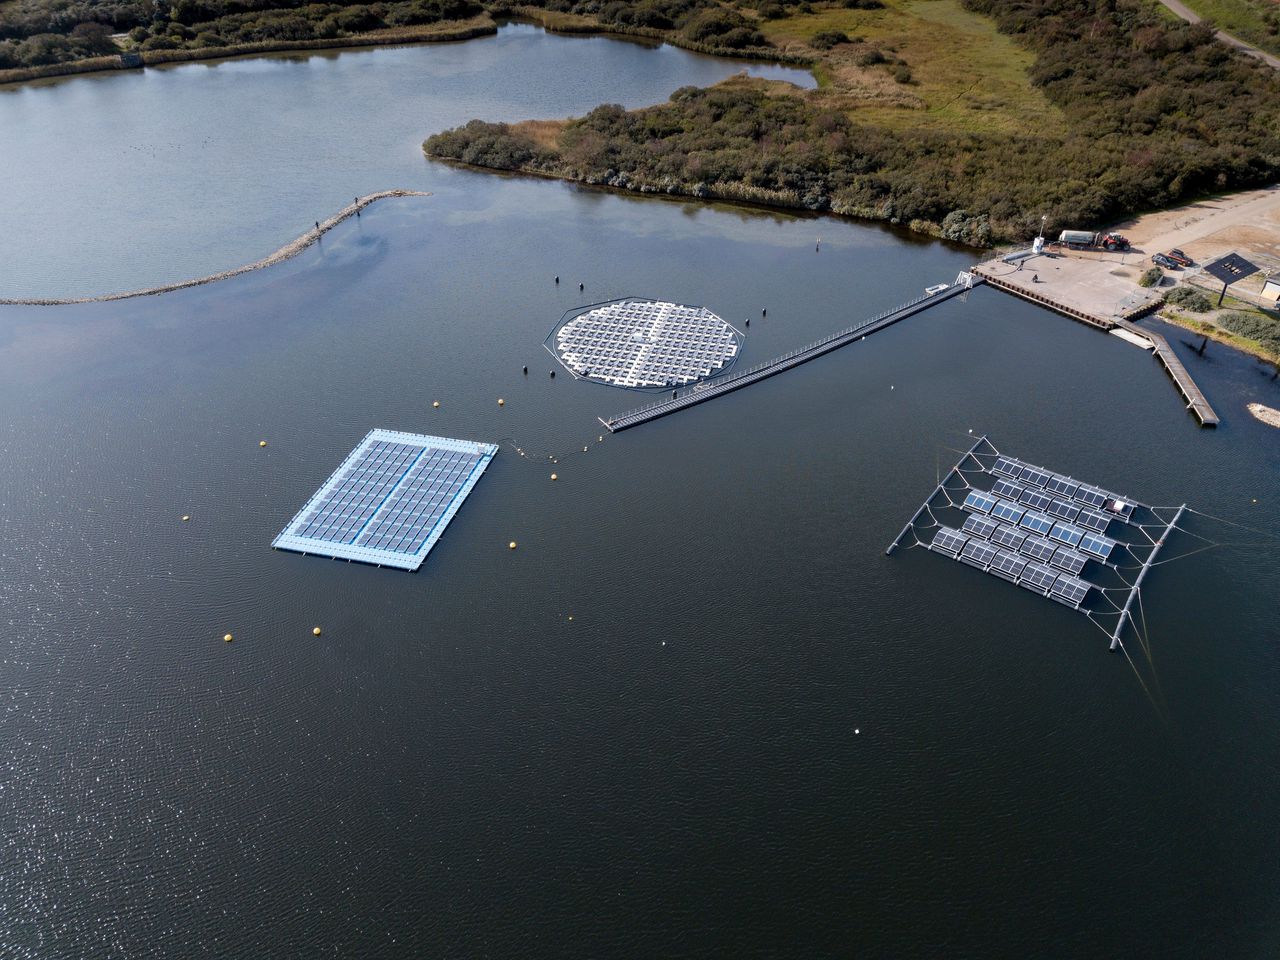 Op het Oostvoornse Meer test TNO drie constructies met drijvende zonnepanelen. Vanaf links: vrijwel platliggende panelen; rond eiland dat meedraait met de zon; panelen in dakjes tegen elkaar.